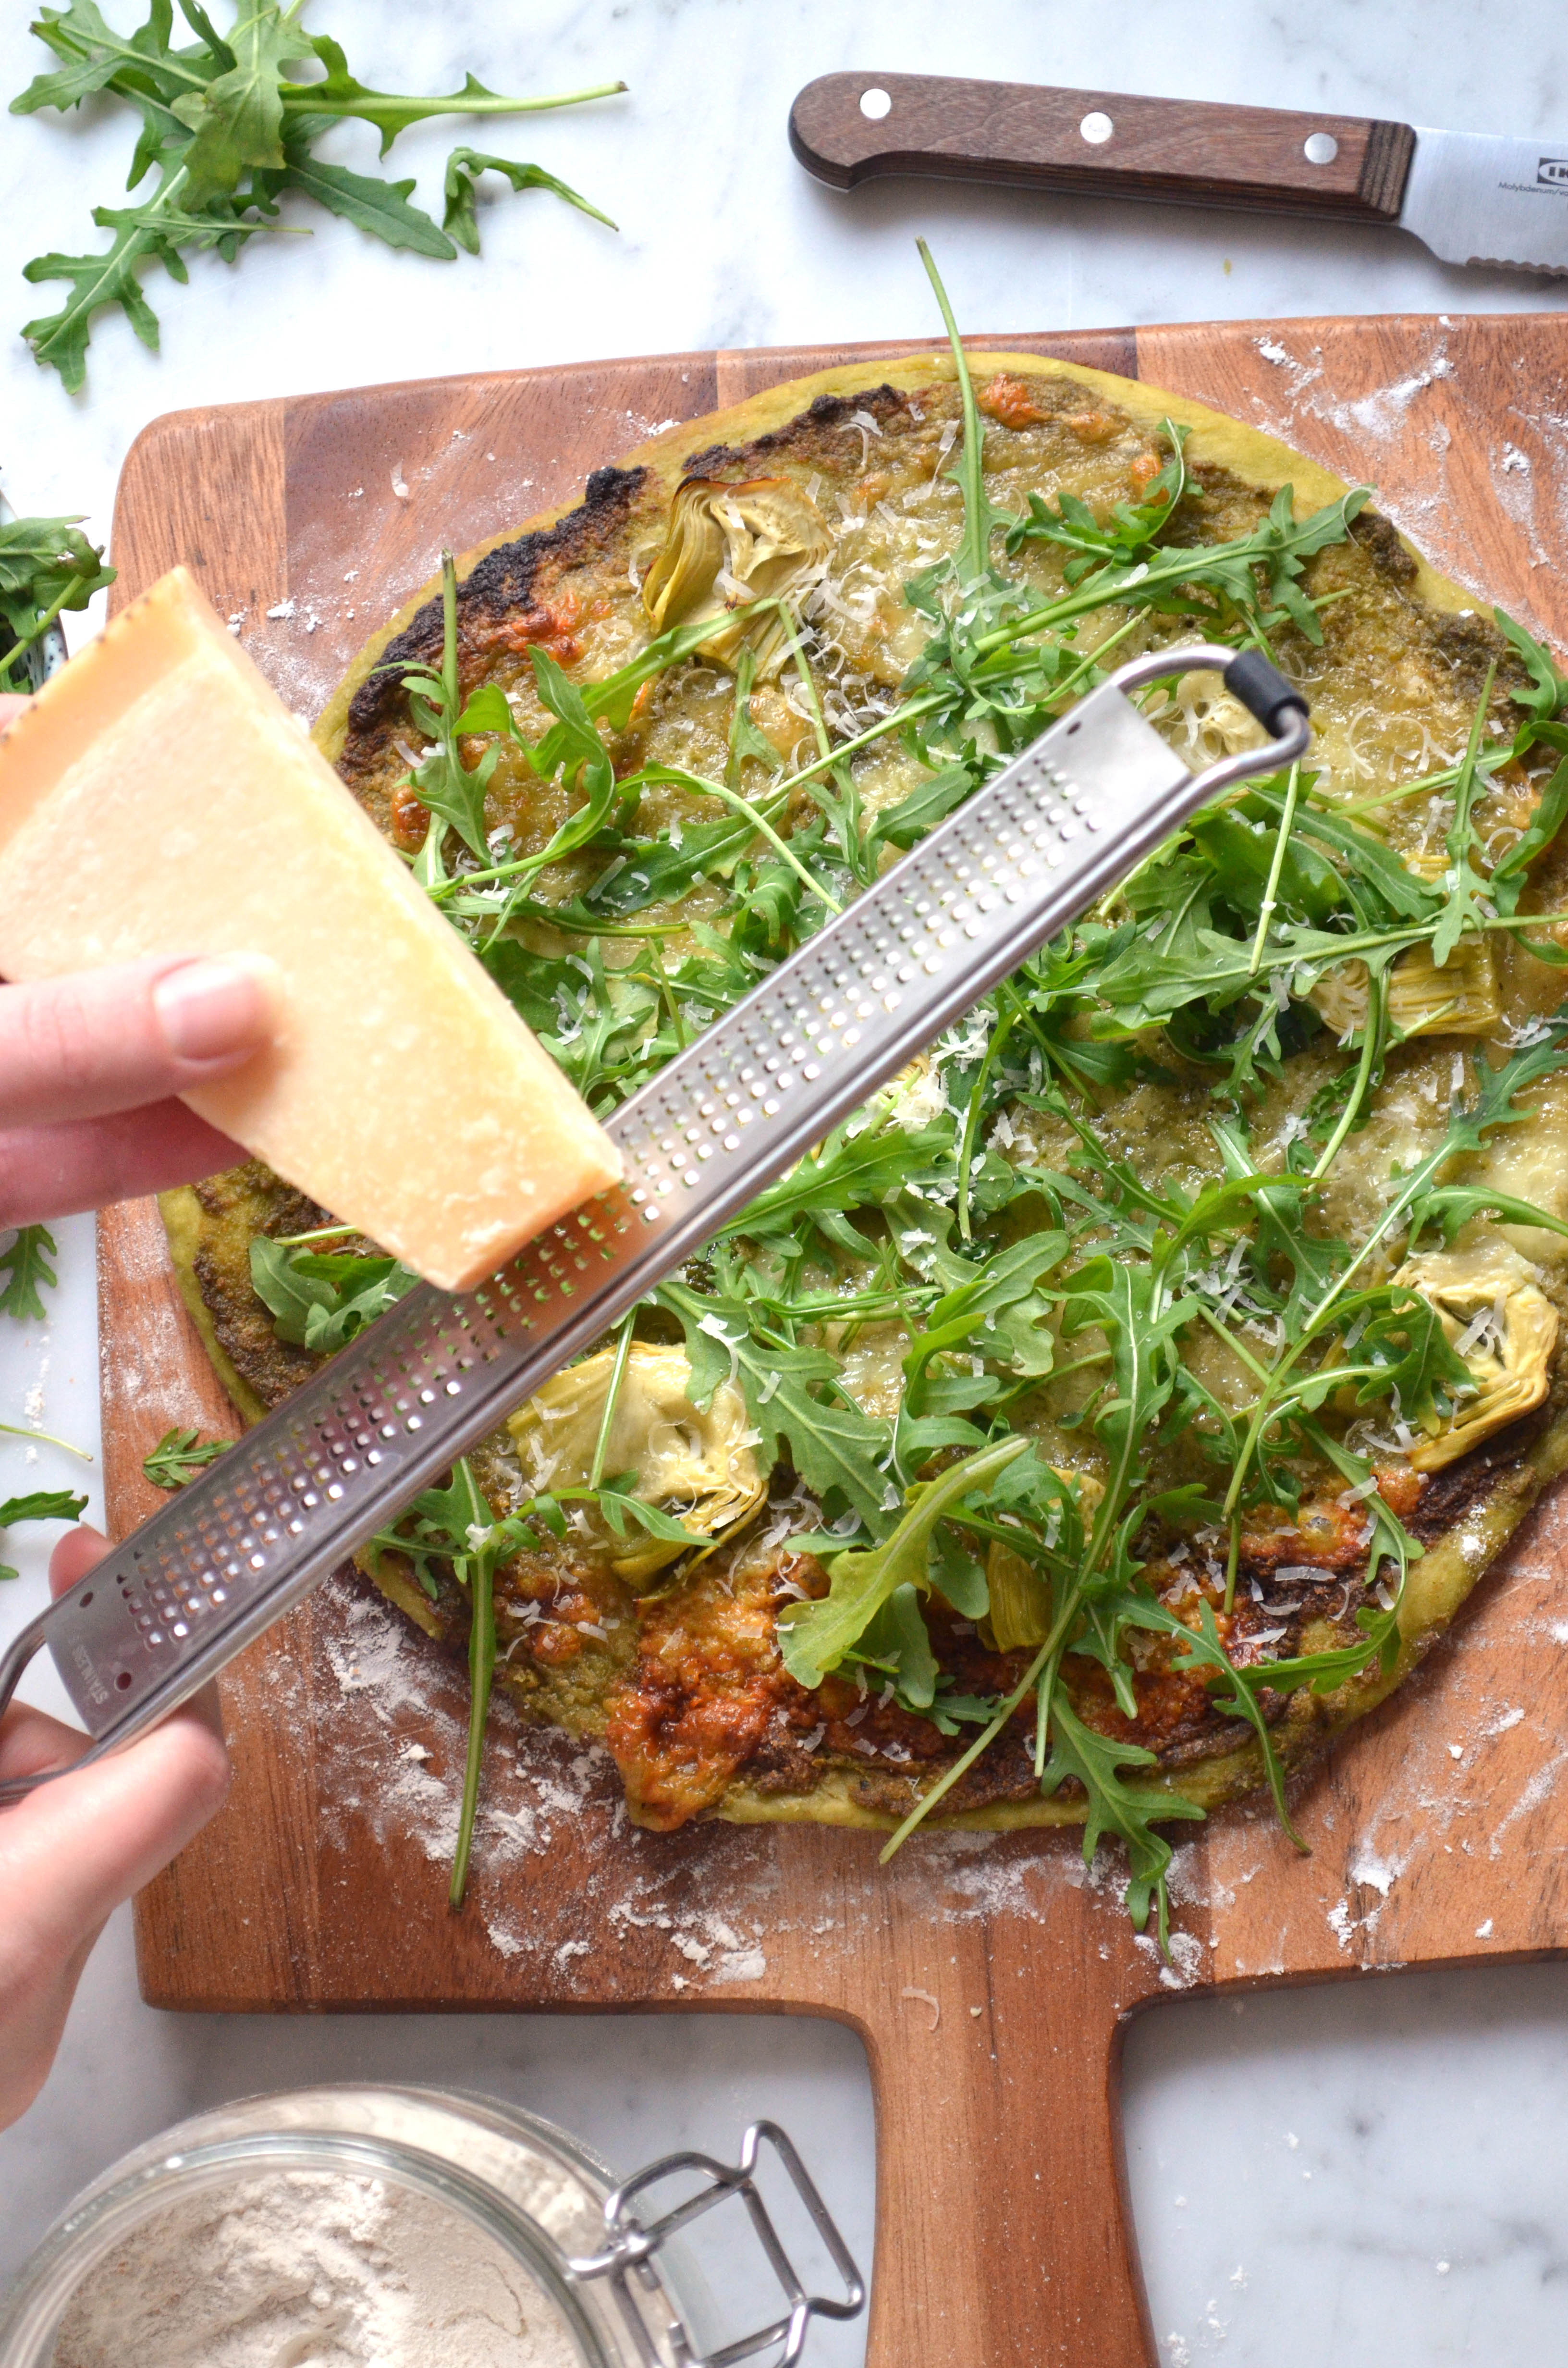 Recipe for homemade pizza dough and pizza verde with pesto, arugula, artichokes, mozzarella and parmesan cheese.